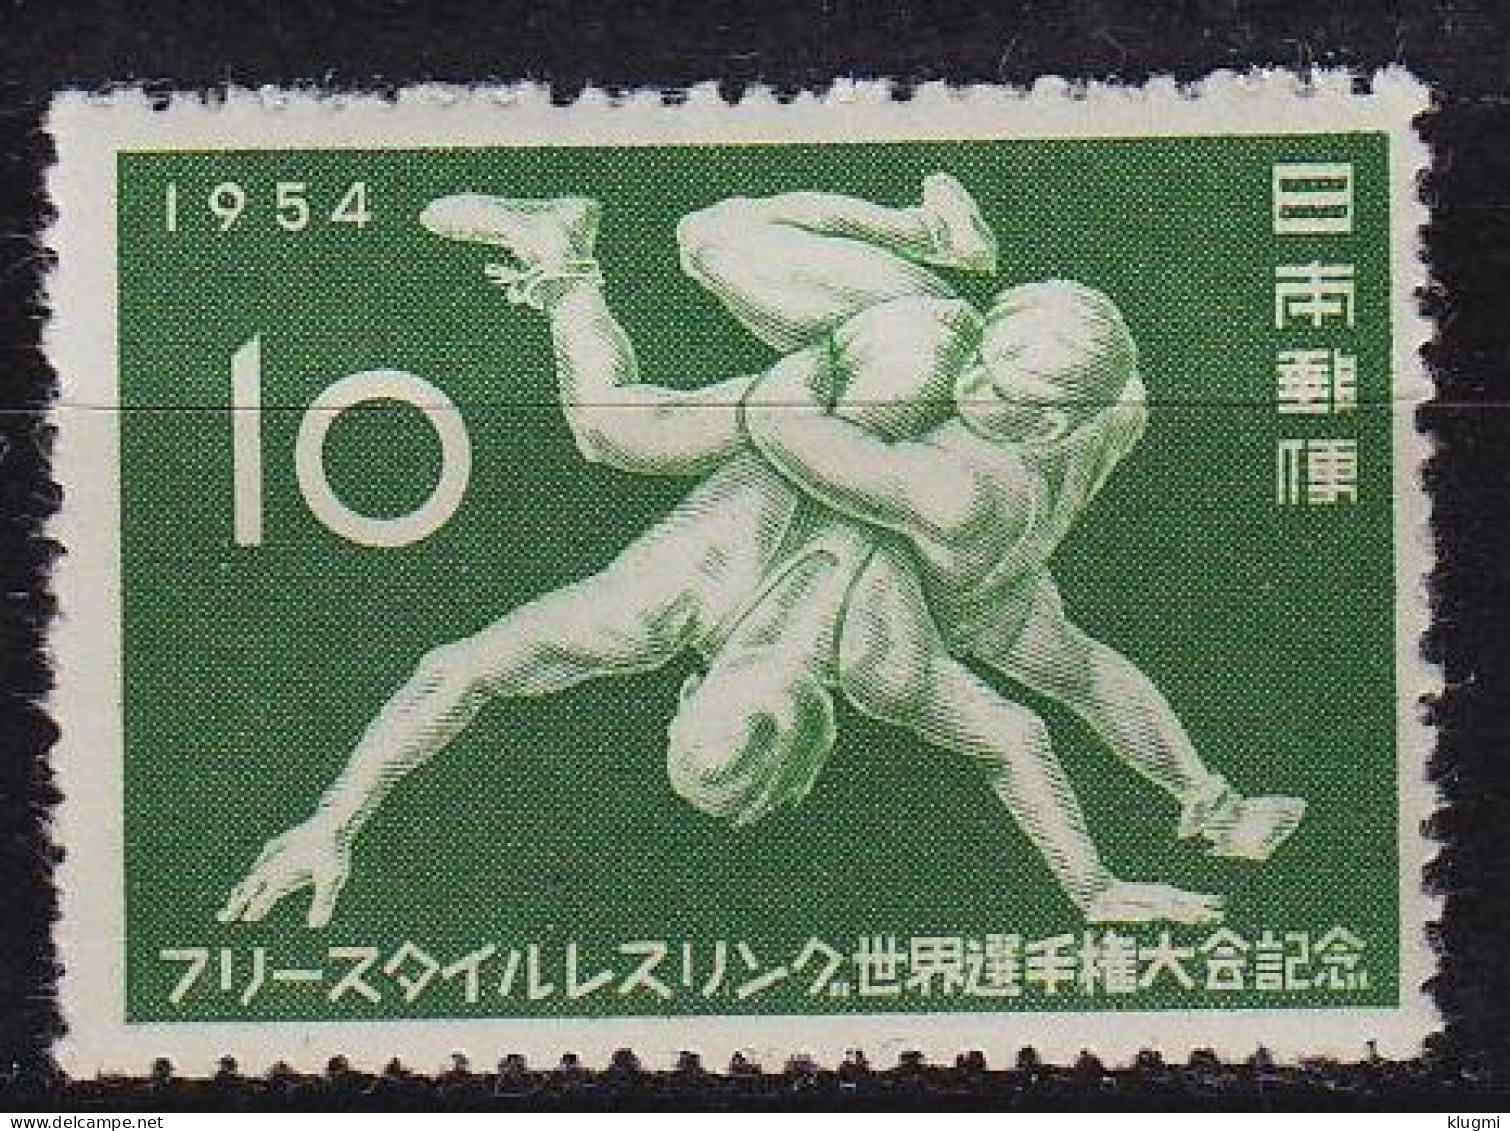 JAPAN [1954] MiNr 0631 ( **/mnh ) Sport - Neufs